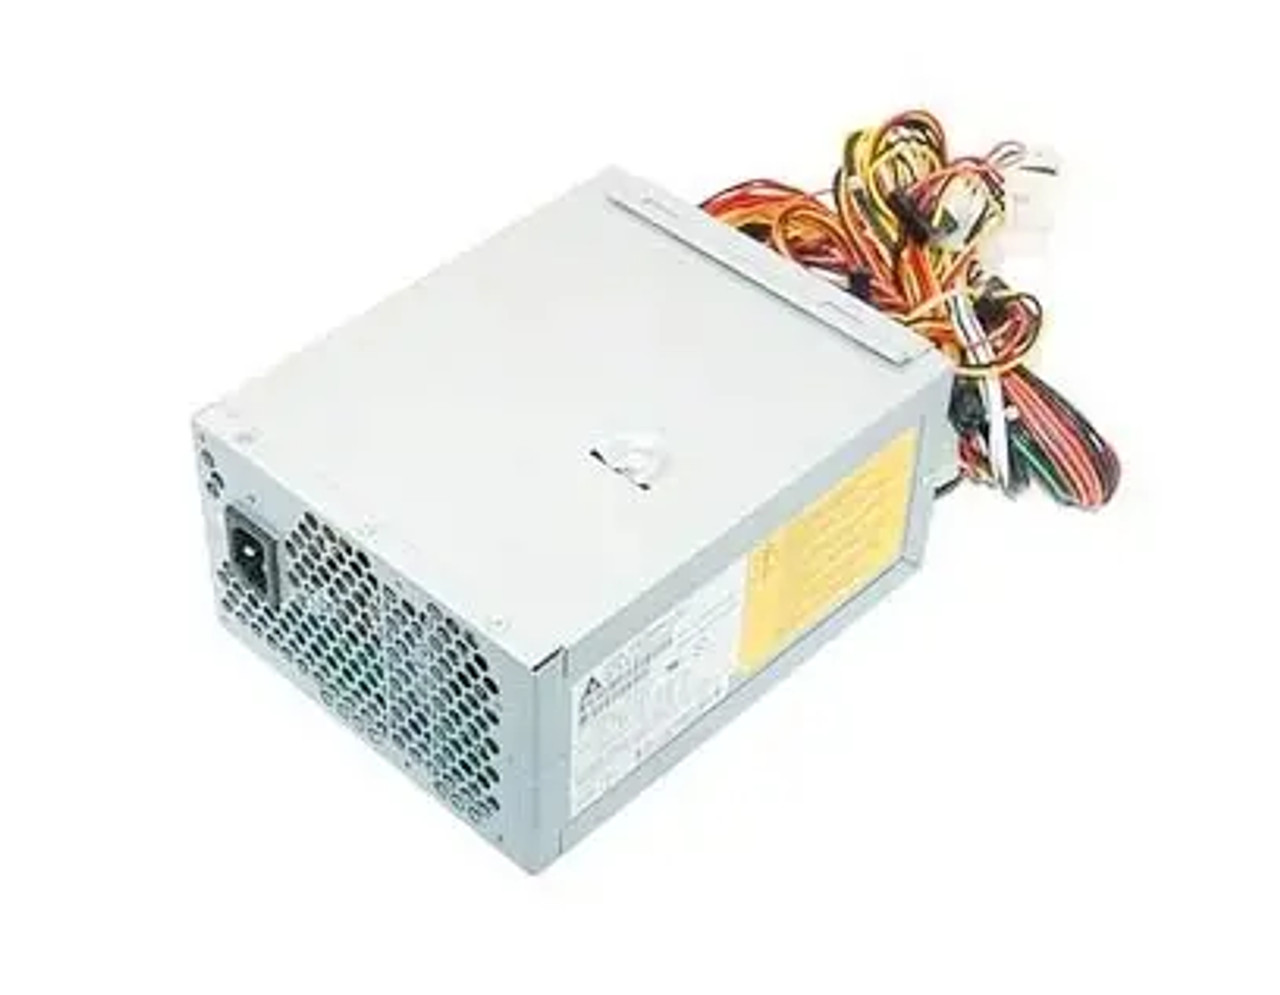 614-0264 | Apple | 400 Watts Power Supply for Xserve G5 Server